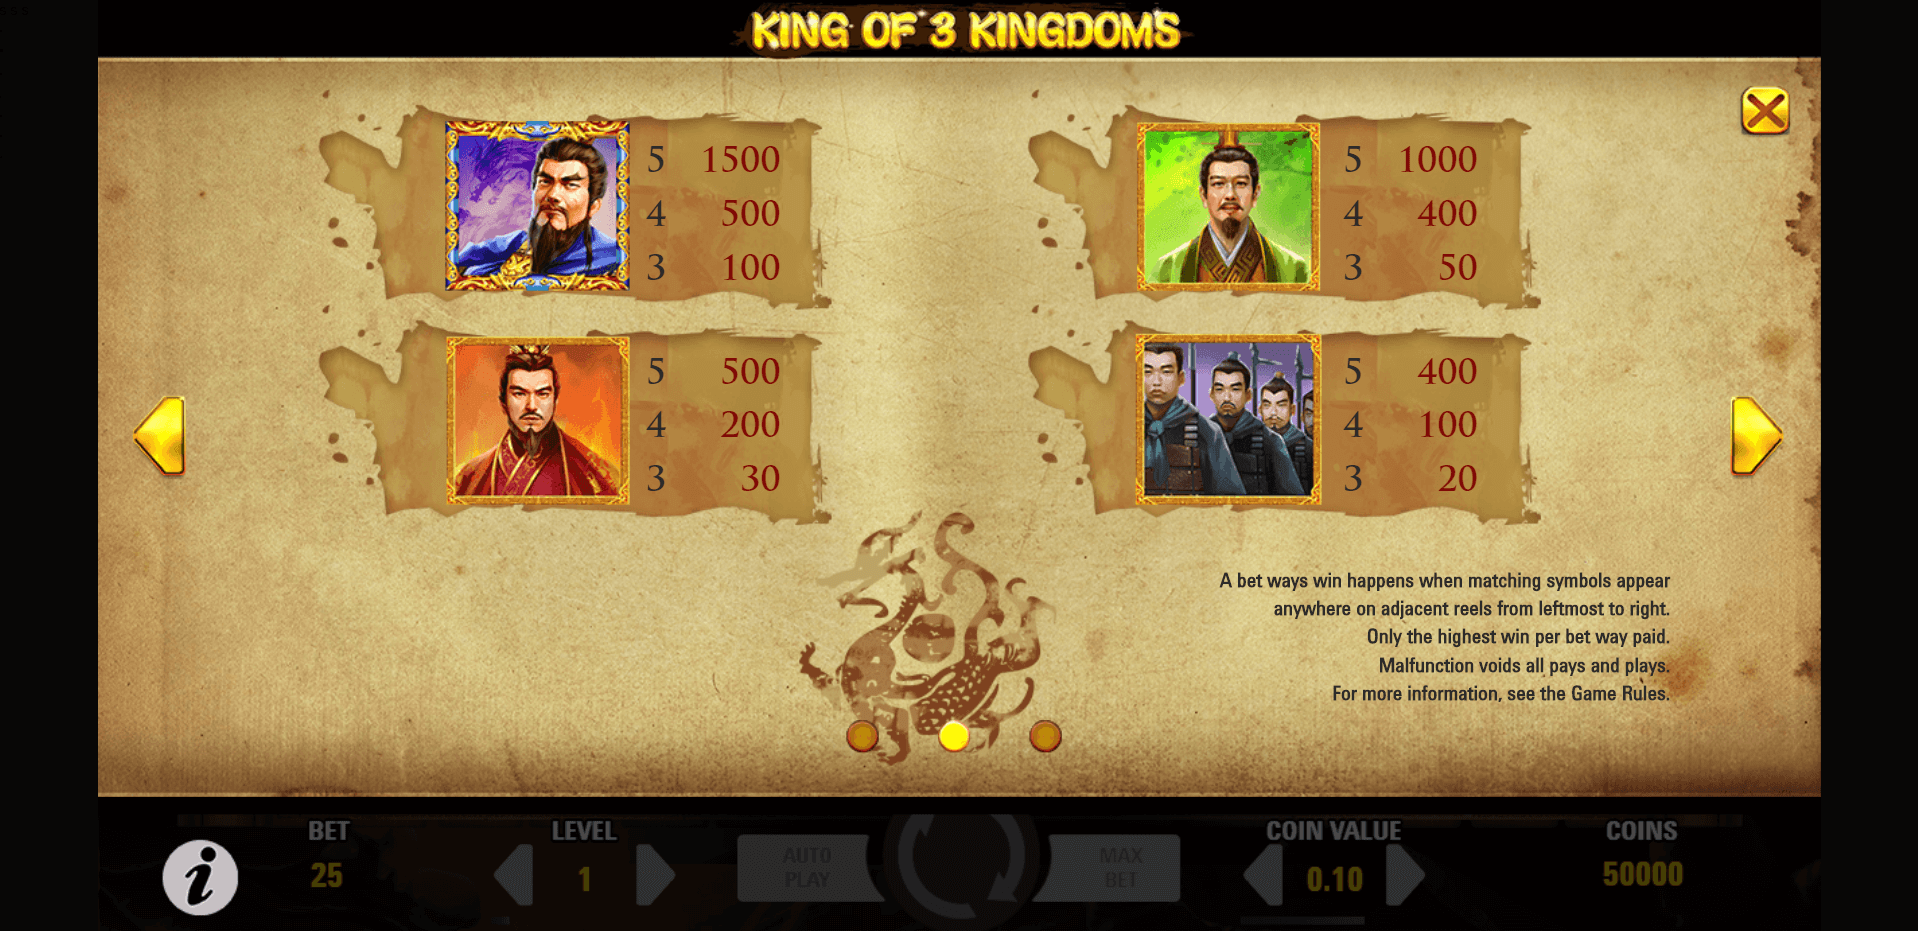 king of 3 kingdoms slot machine detail image 1